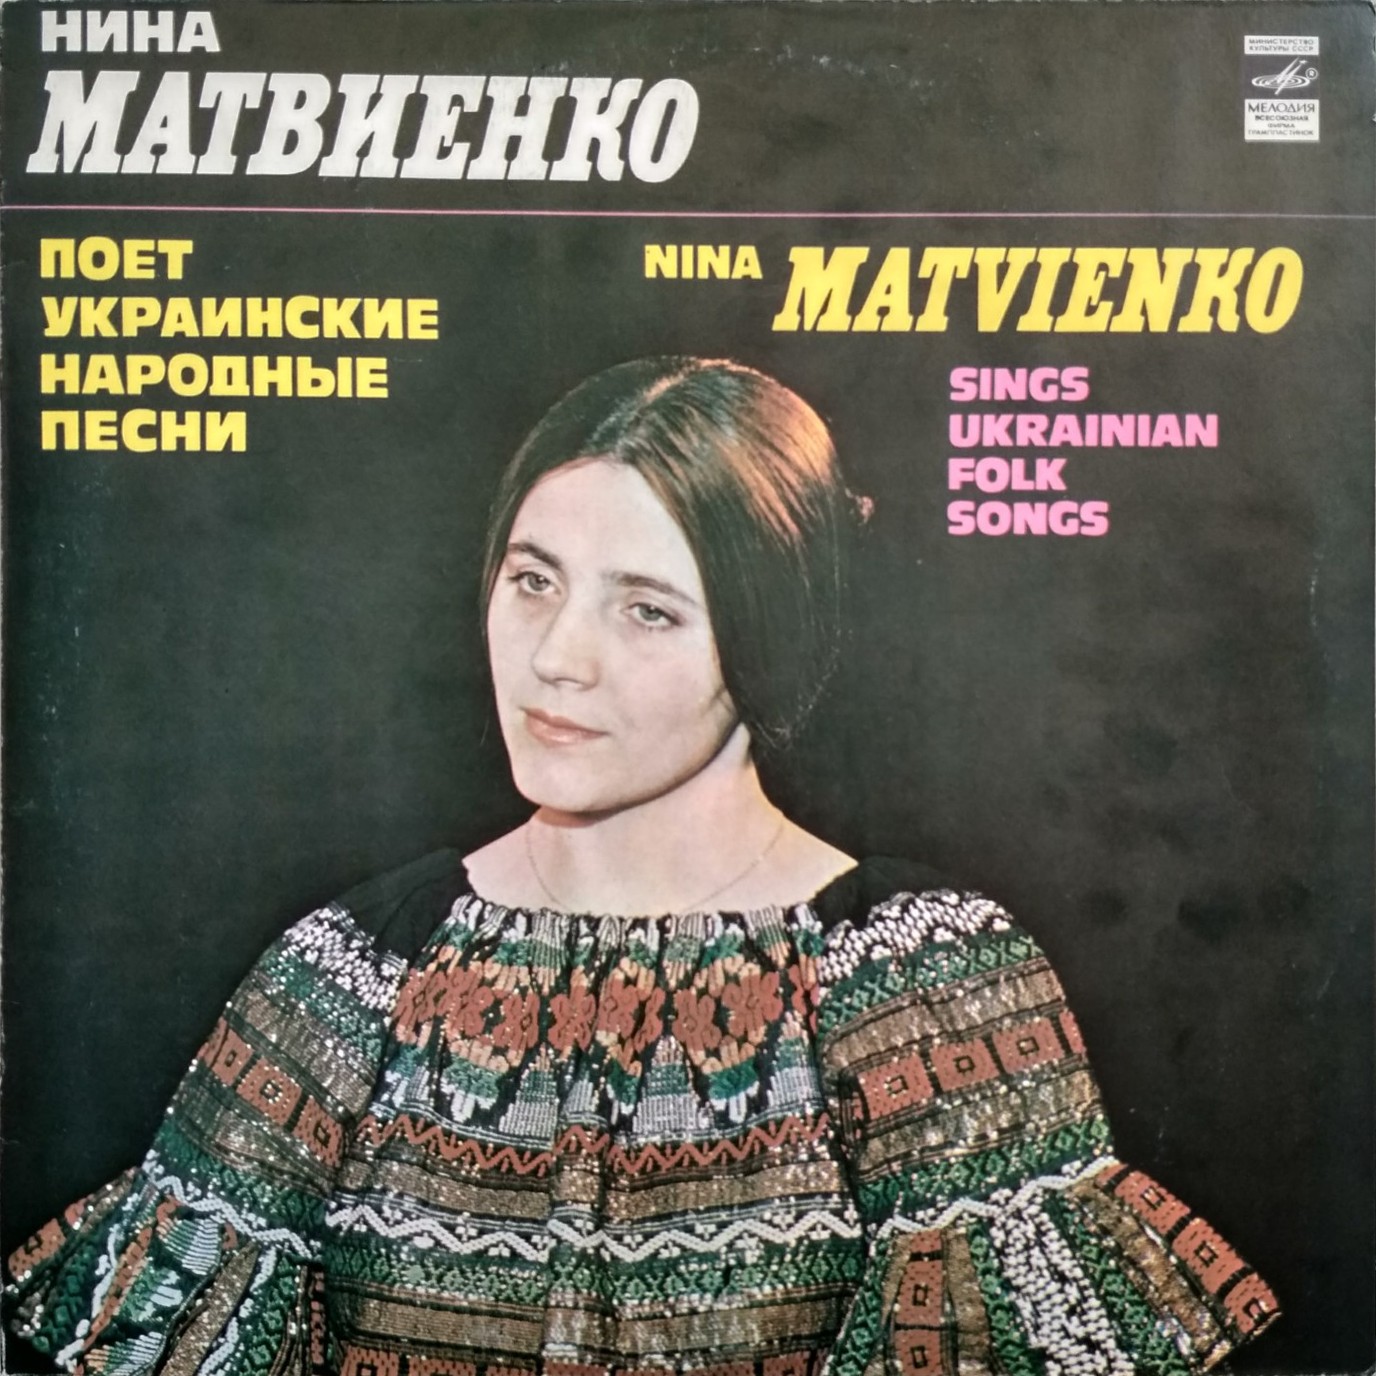 Нина МАТВИЕНКО поет украинские народные песни